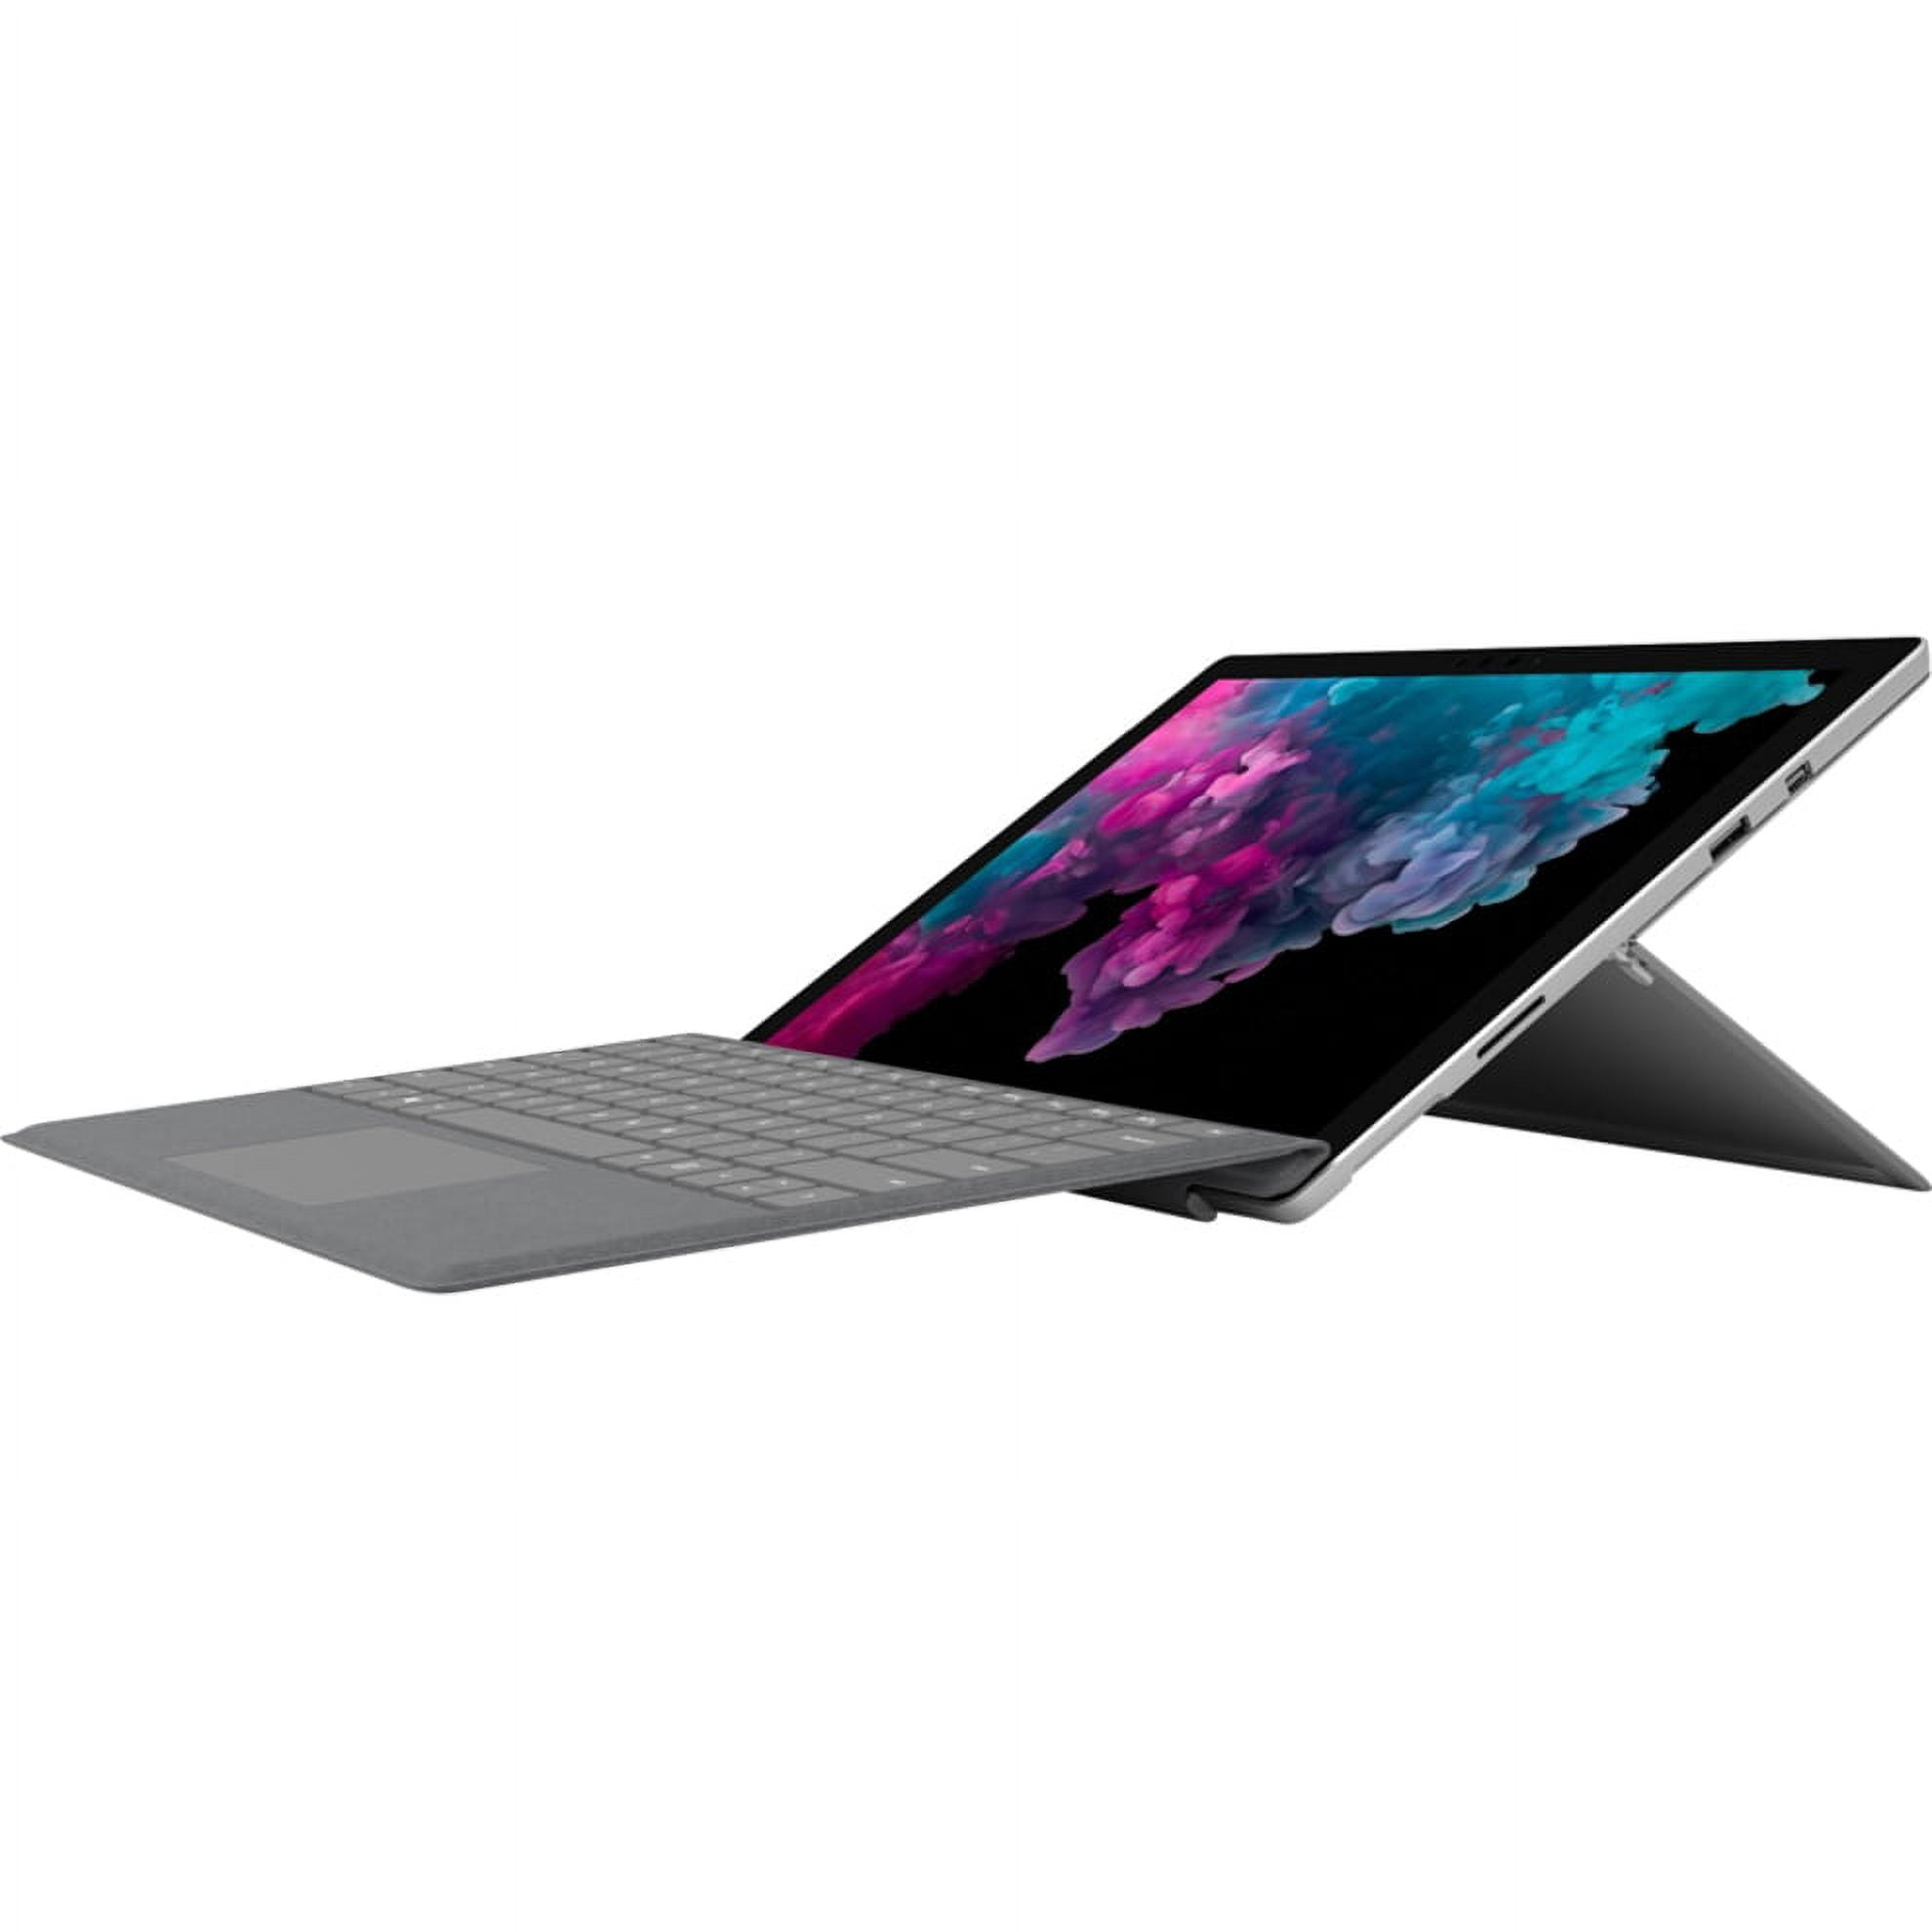 Microsoft Surface Pro 6 - Tablet - Core i5 8250U / 1.6 GHz